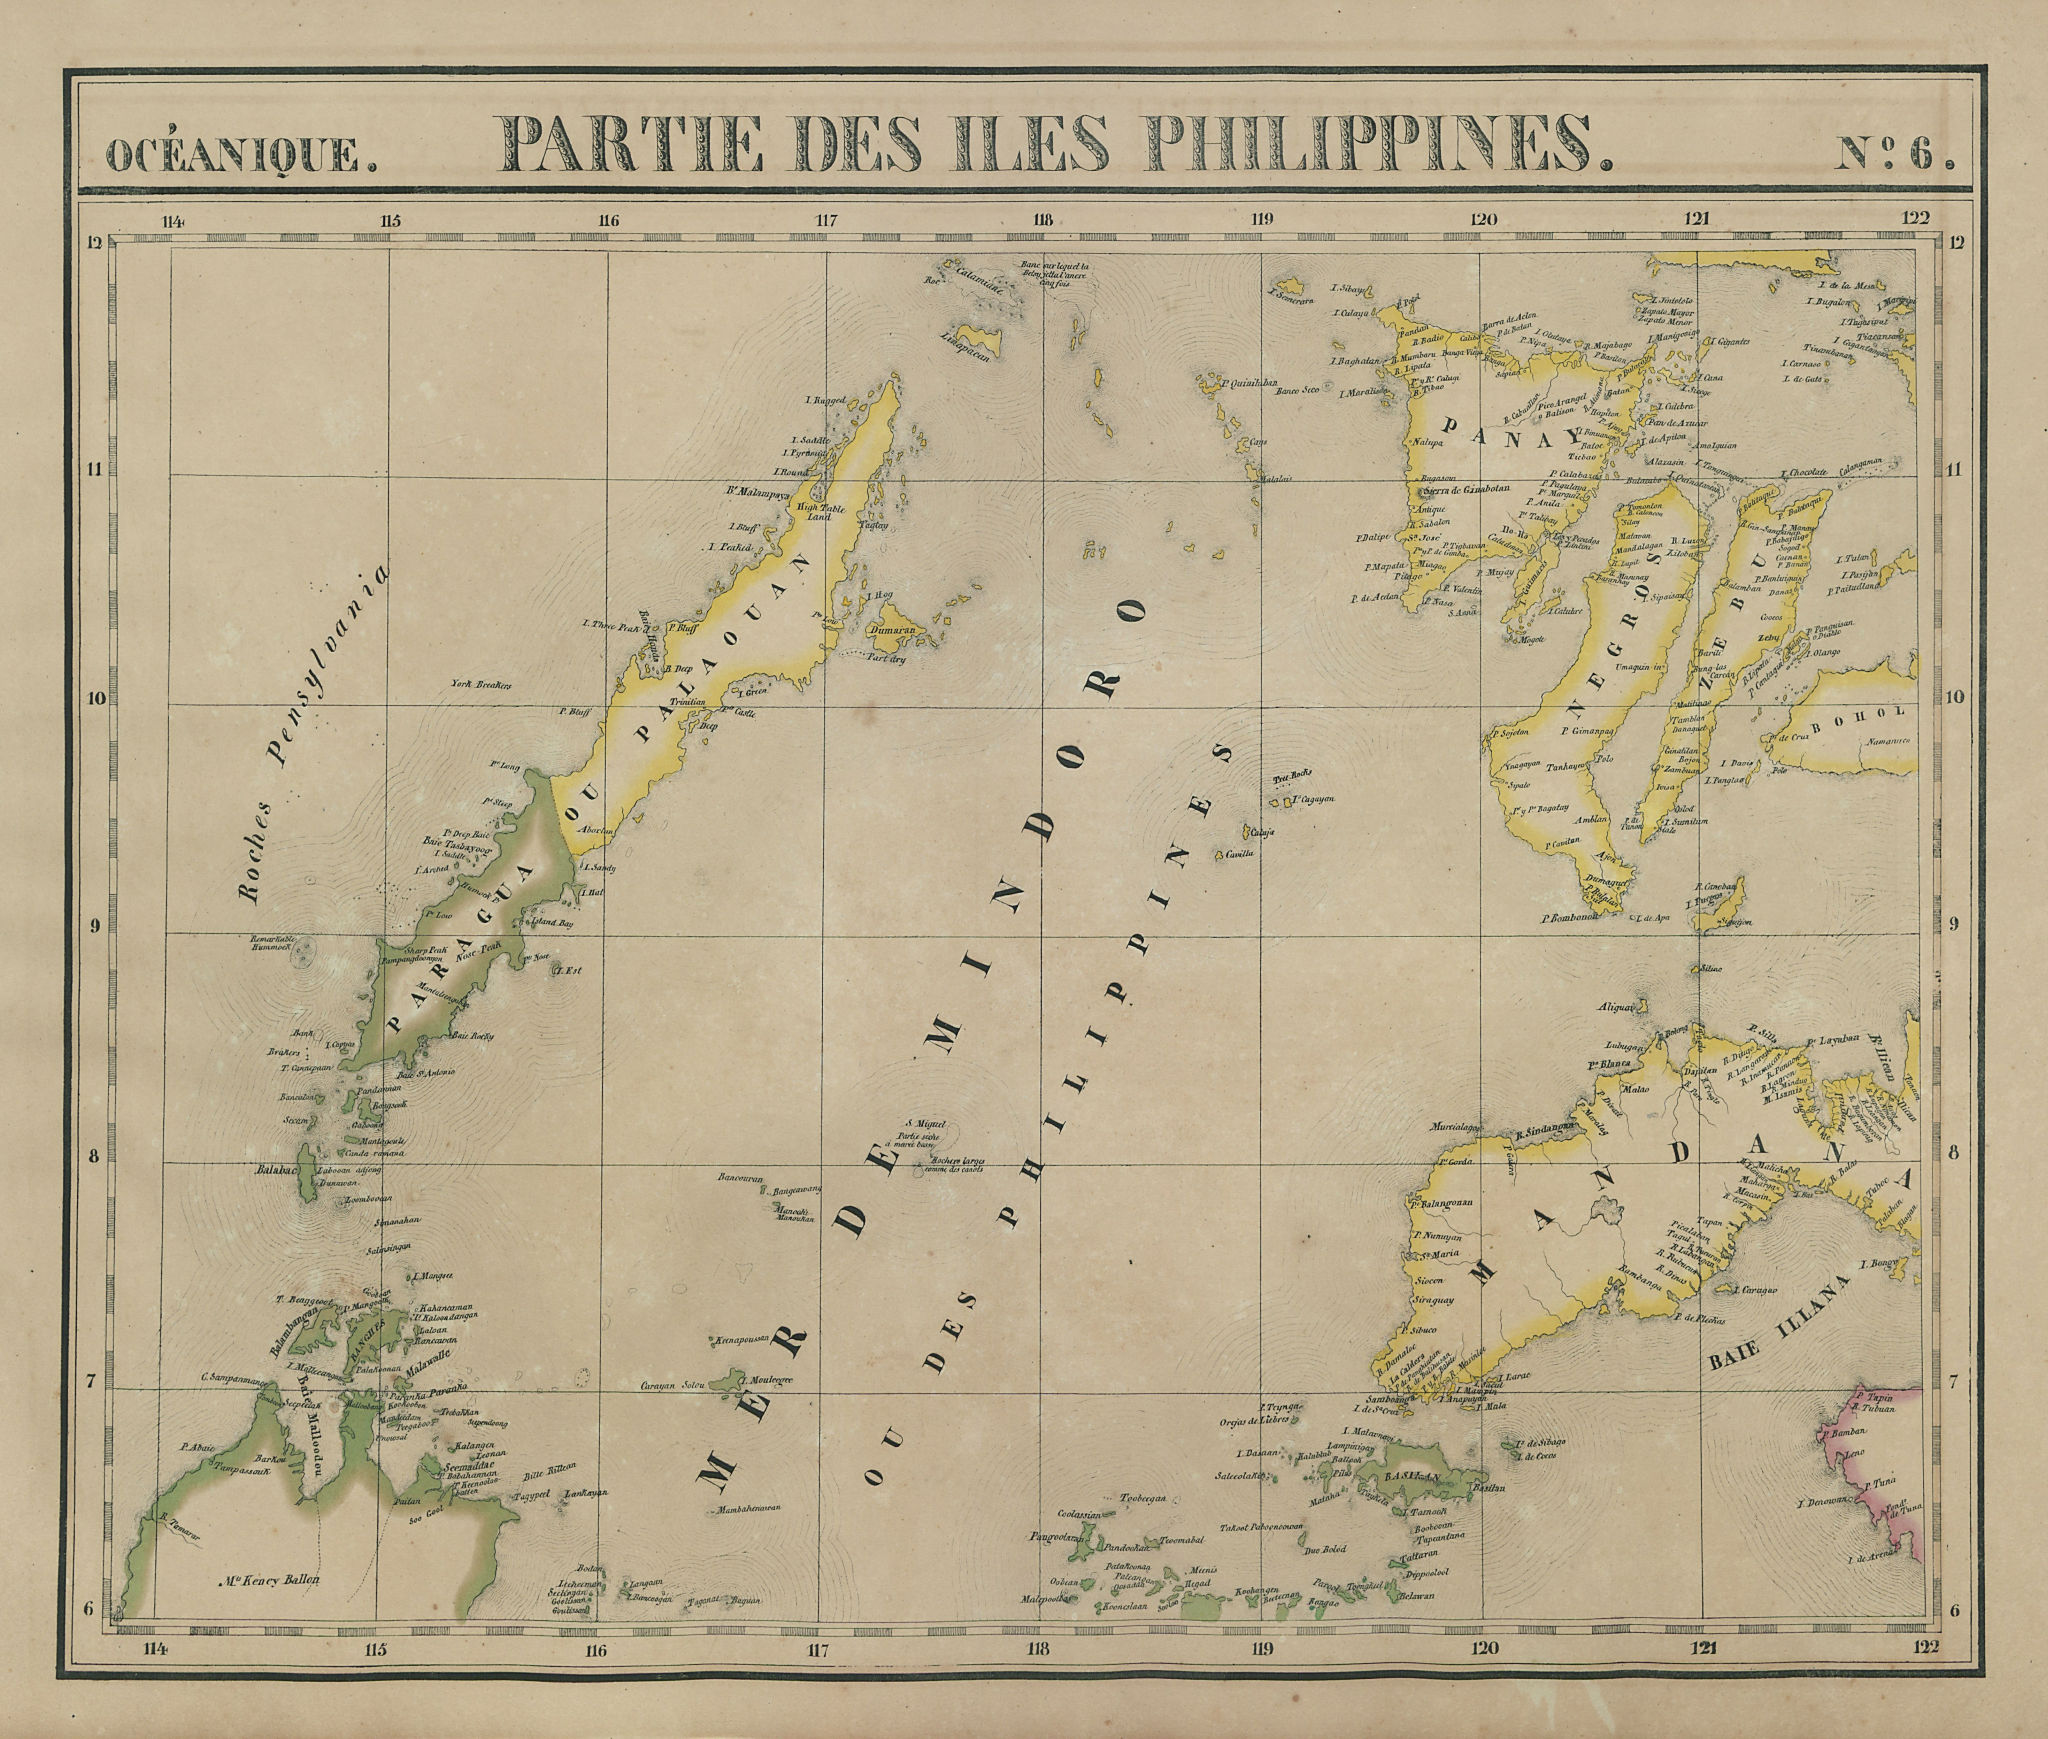 Associate Product Océanique. Partie des Iles Philippines #6 Visayas Mindanao VANDERMAELEN 1827 map